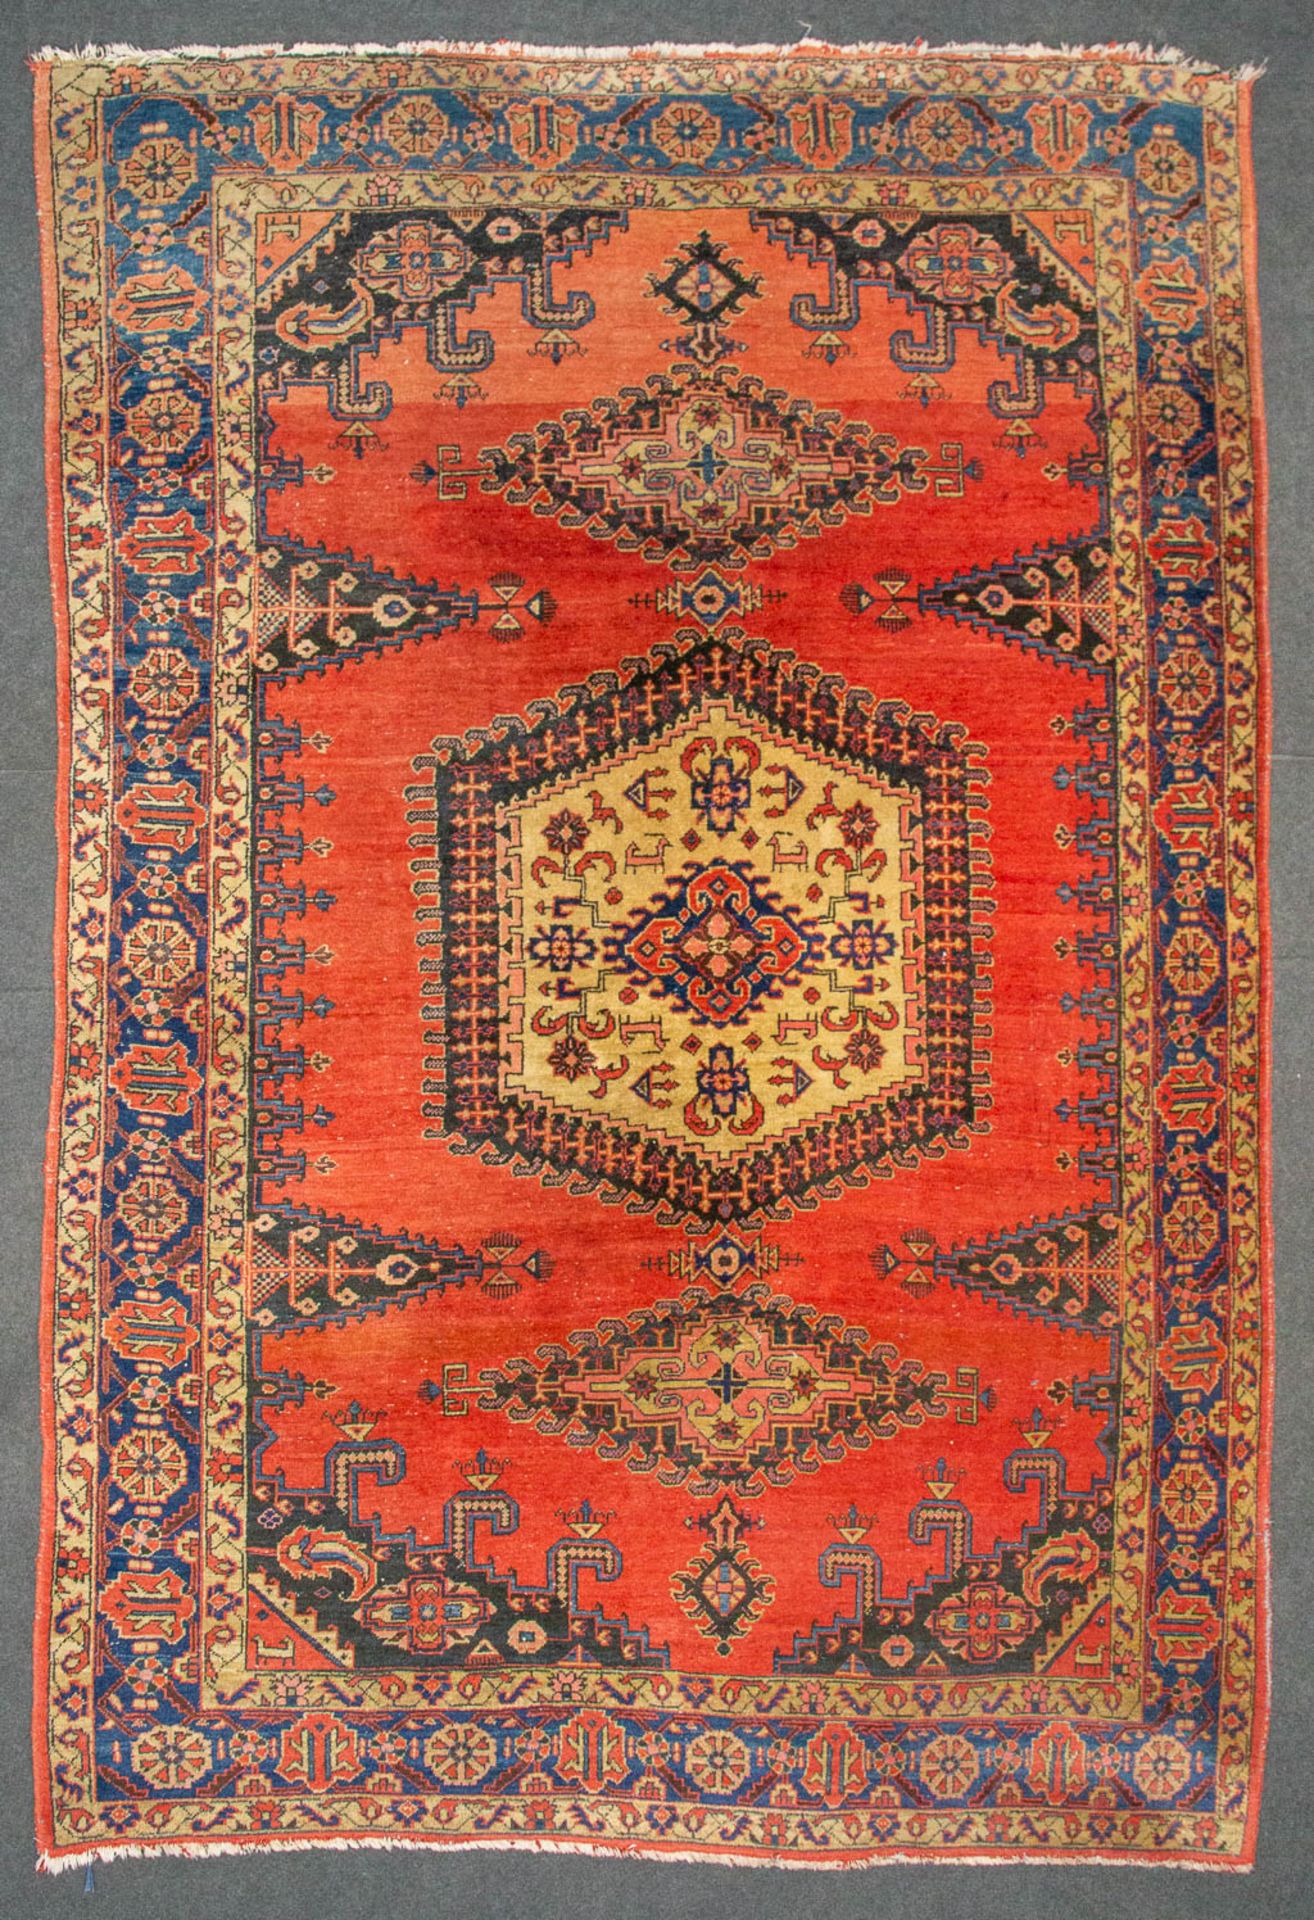 An Oriental hand-made carpet. (330 x 215 cm).